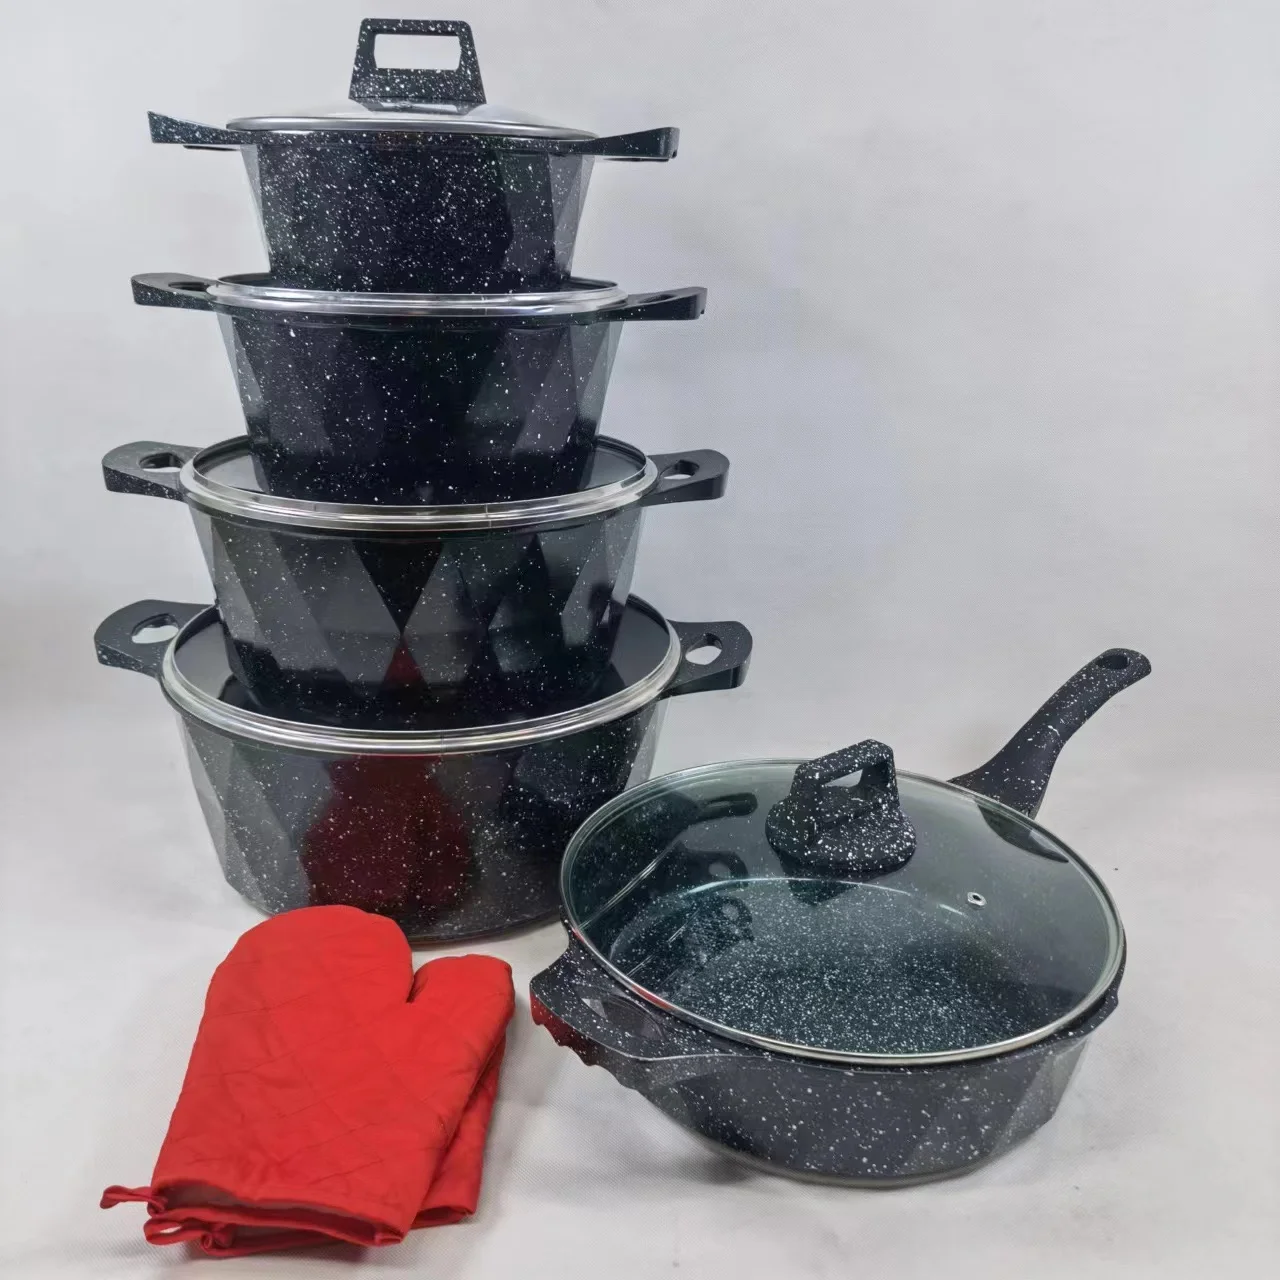 2pcs Cooking Non Stick 20/24/28/32cm Cookware Sets Frying Casserole kitchen pots and pans sets Cookware Sets Granite Aluminum